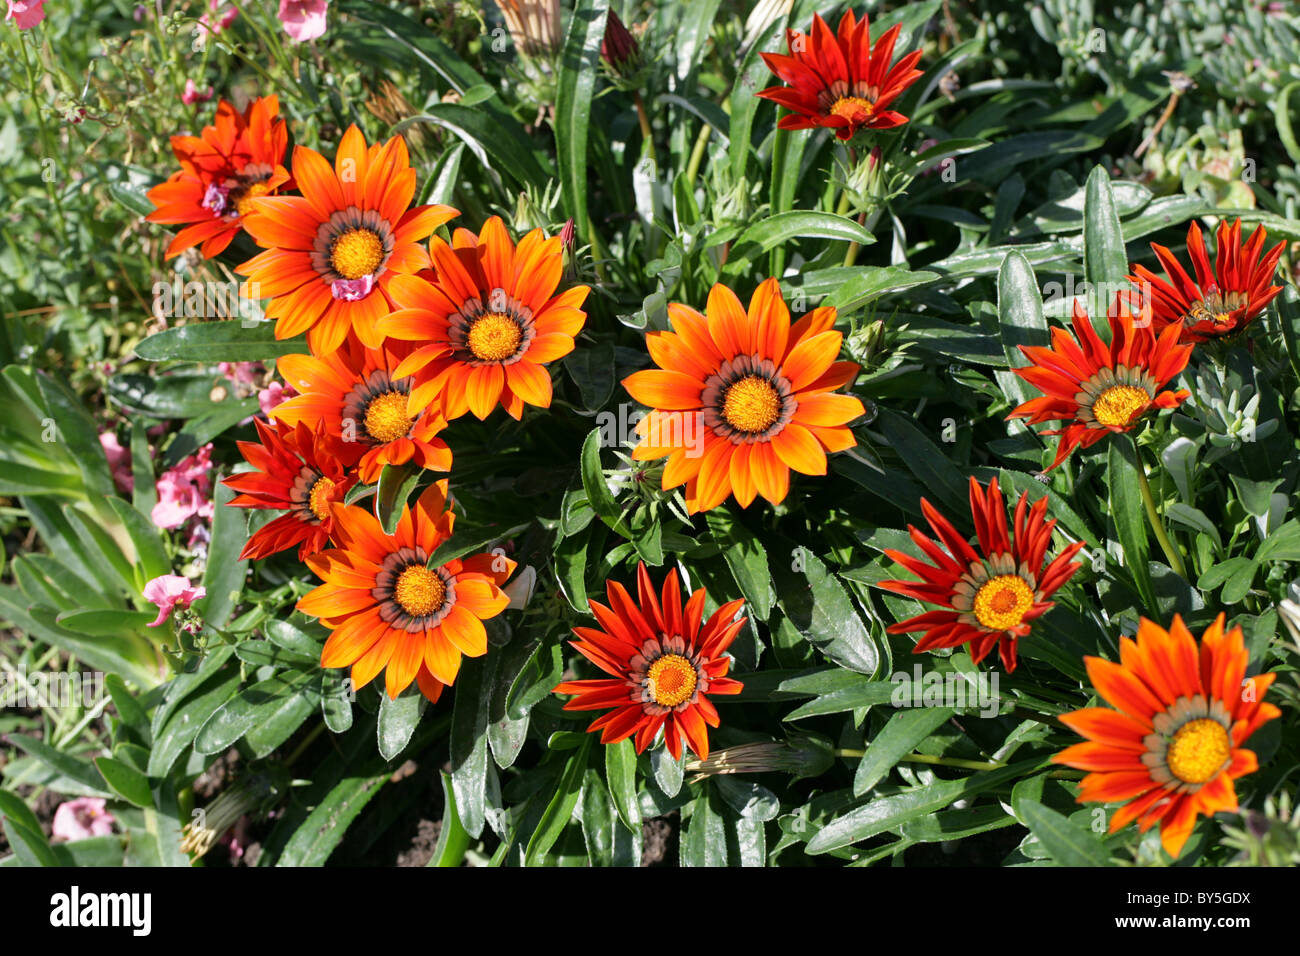 Gazania hybride (origine), le jardin de la famille des Astéracées. Fleurs orange vif. Banque D'Images